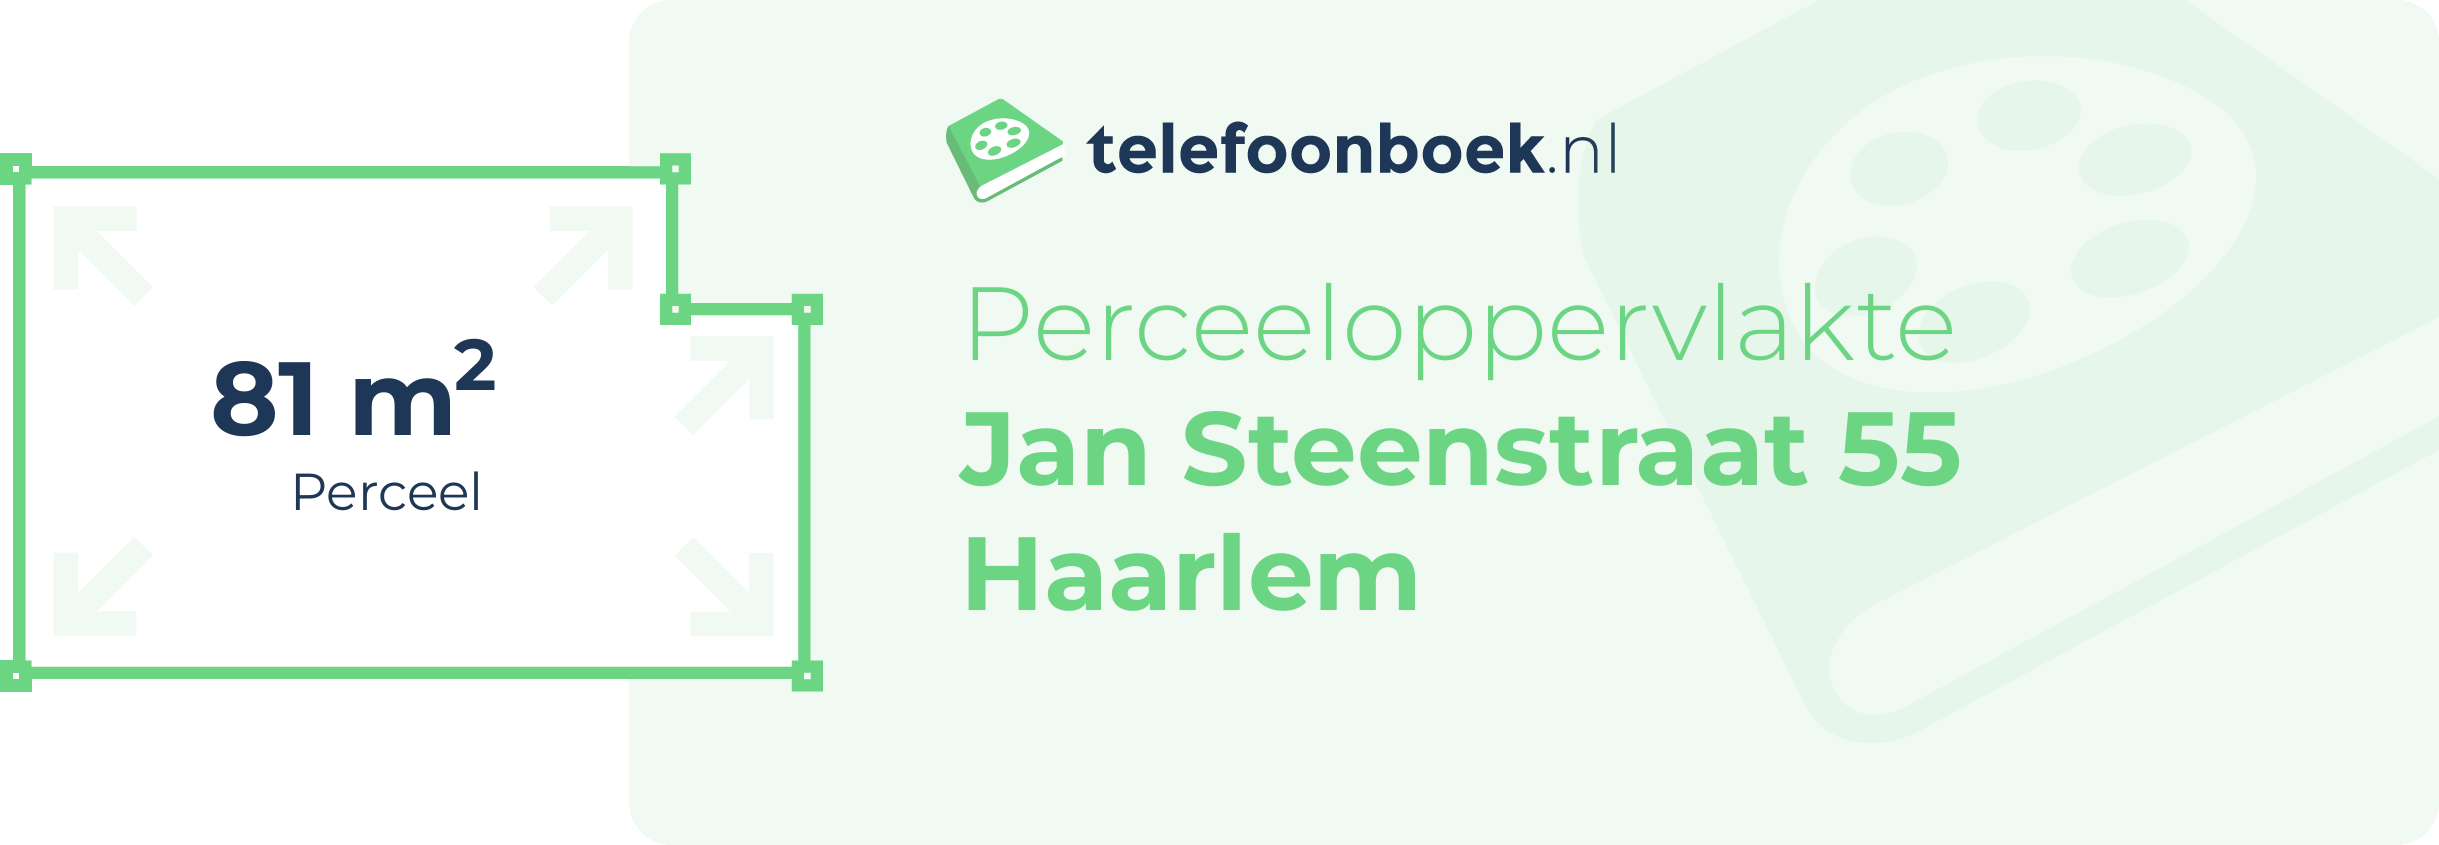 Perceeloppervlakte Jan Steenstraat 55 Haarlem